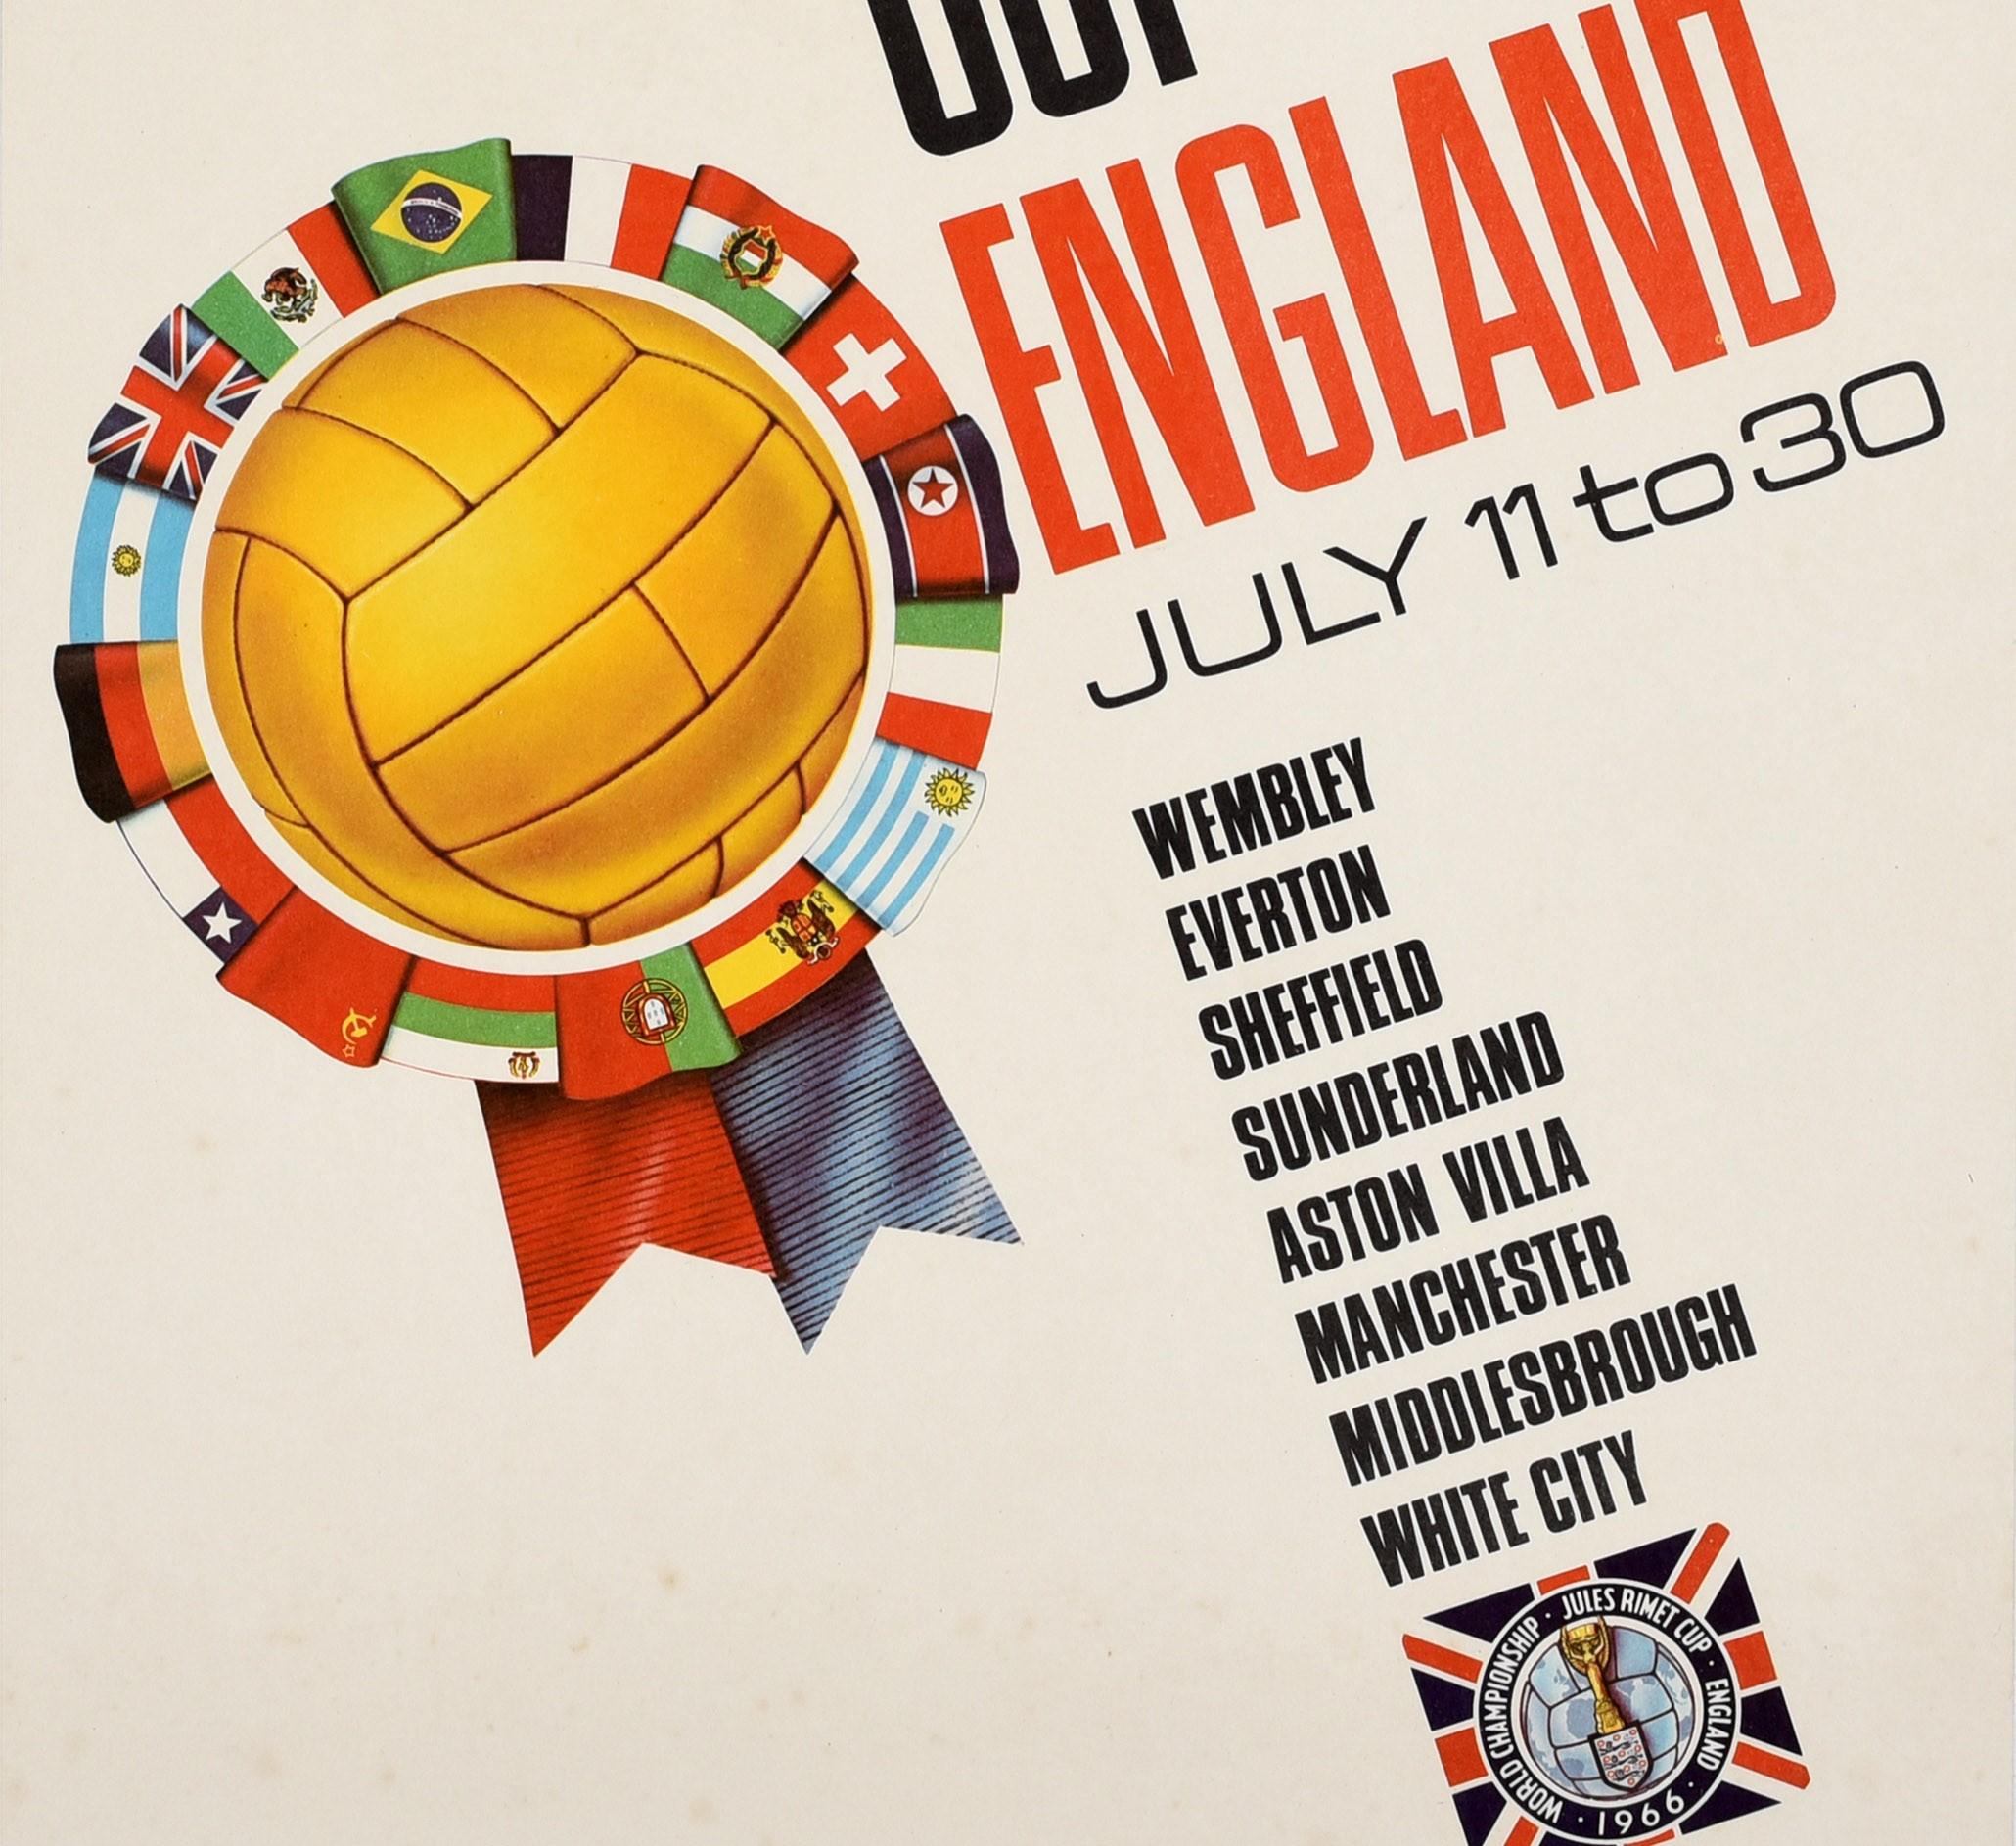 Original Vintage-Werbeplakat für die Endrunde der Fußballweltmeisterschaft 1966, die vom 11. bis 30. Juli in England in den Stadien von Wembley, Everton, Sheffield, Sunderland, Aston Villa, Manchester, Middlesbrough und White City stattfand. Es